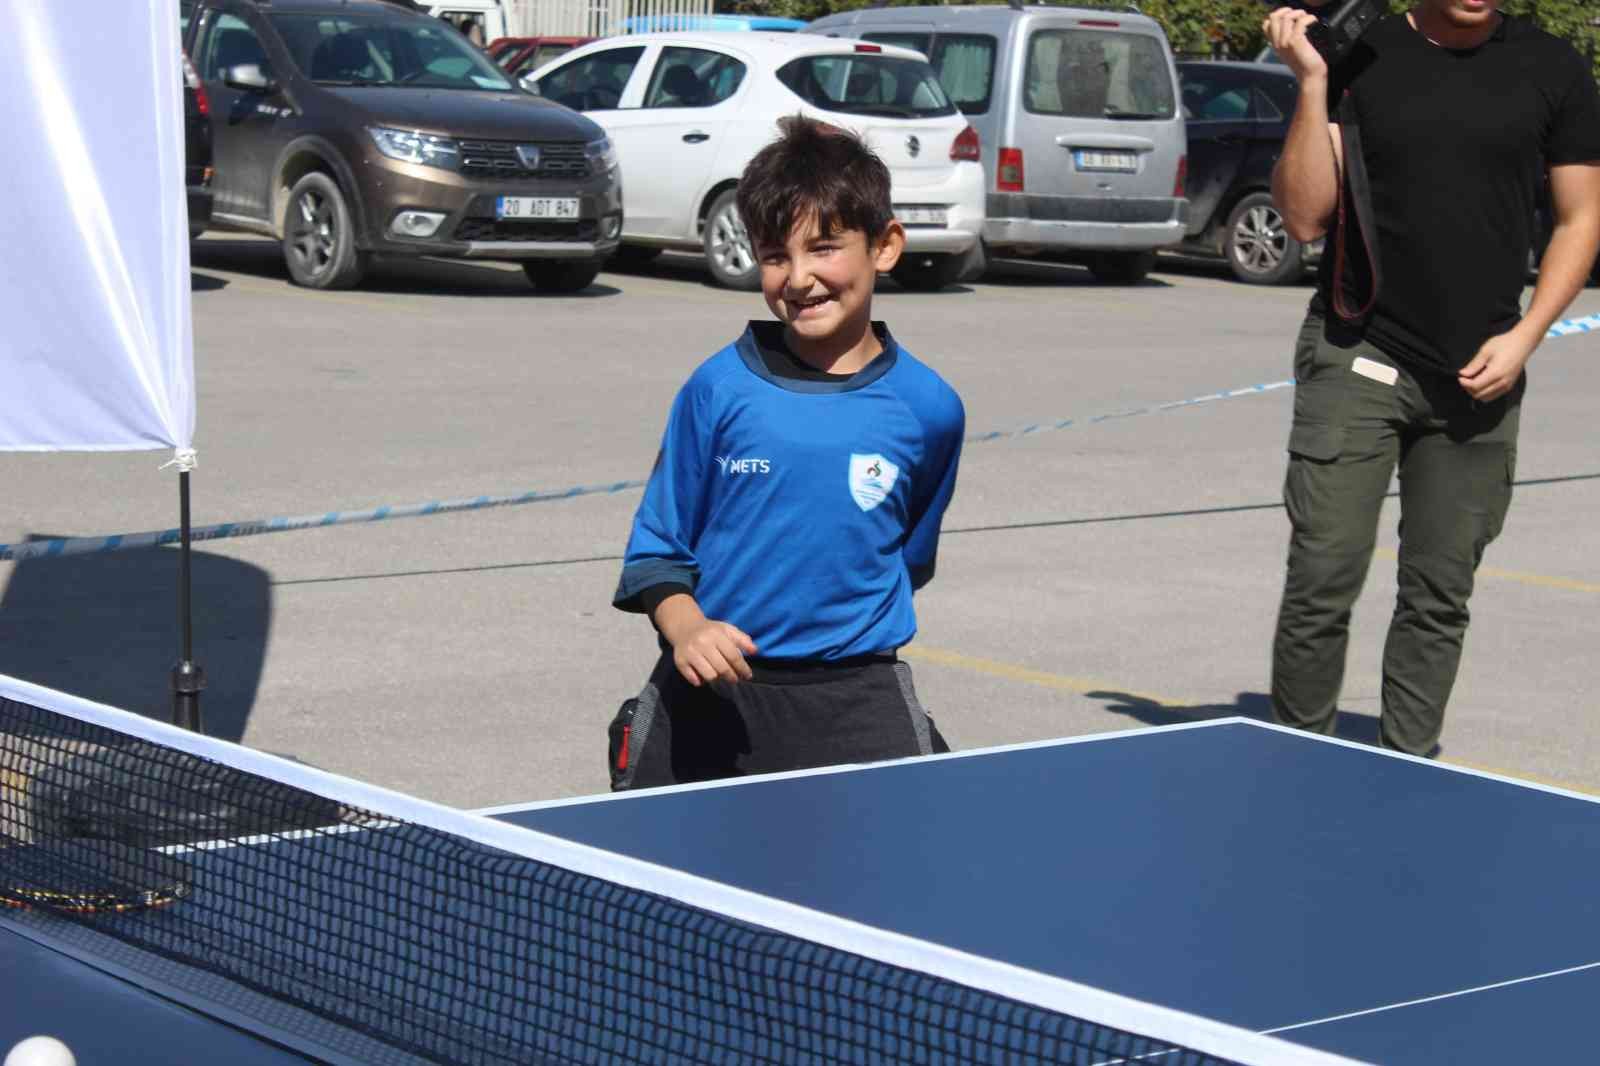 8 yaşında milli olan Akif Efe’nin hedefi takımda kalıcı olmak #denizli